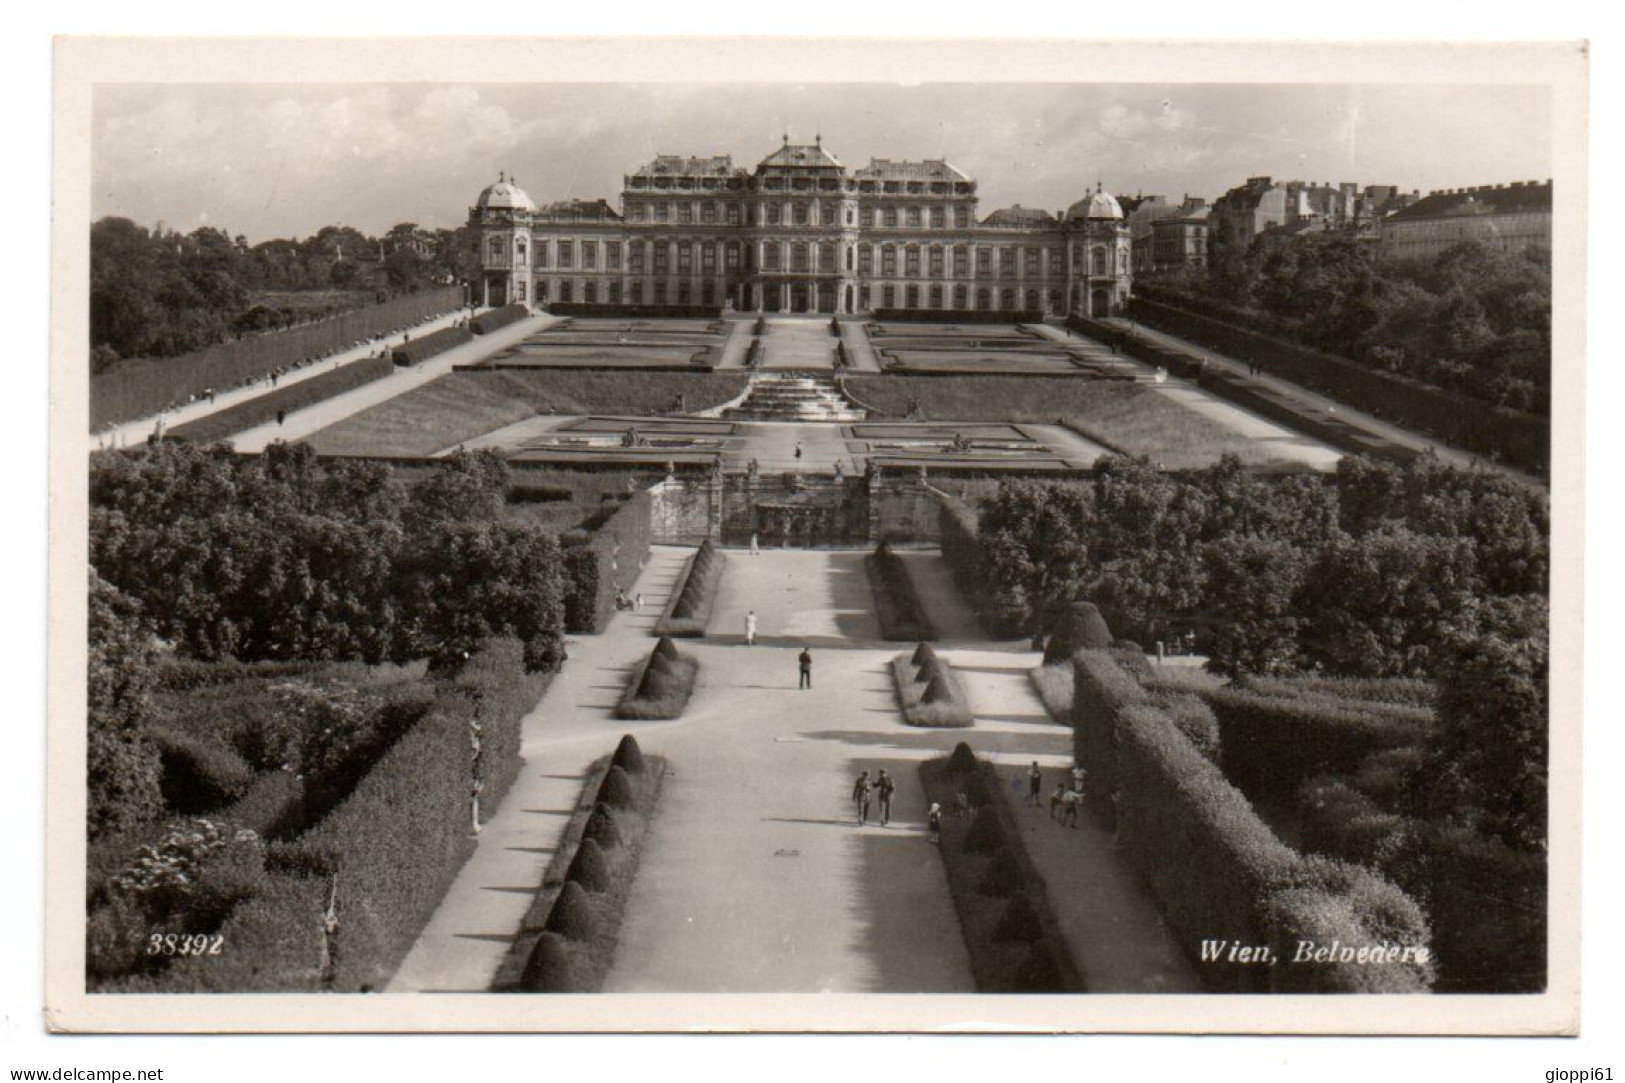 Vienna - Castello Belvedere - Belvedere